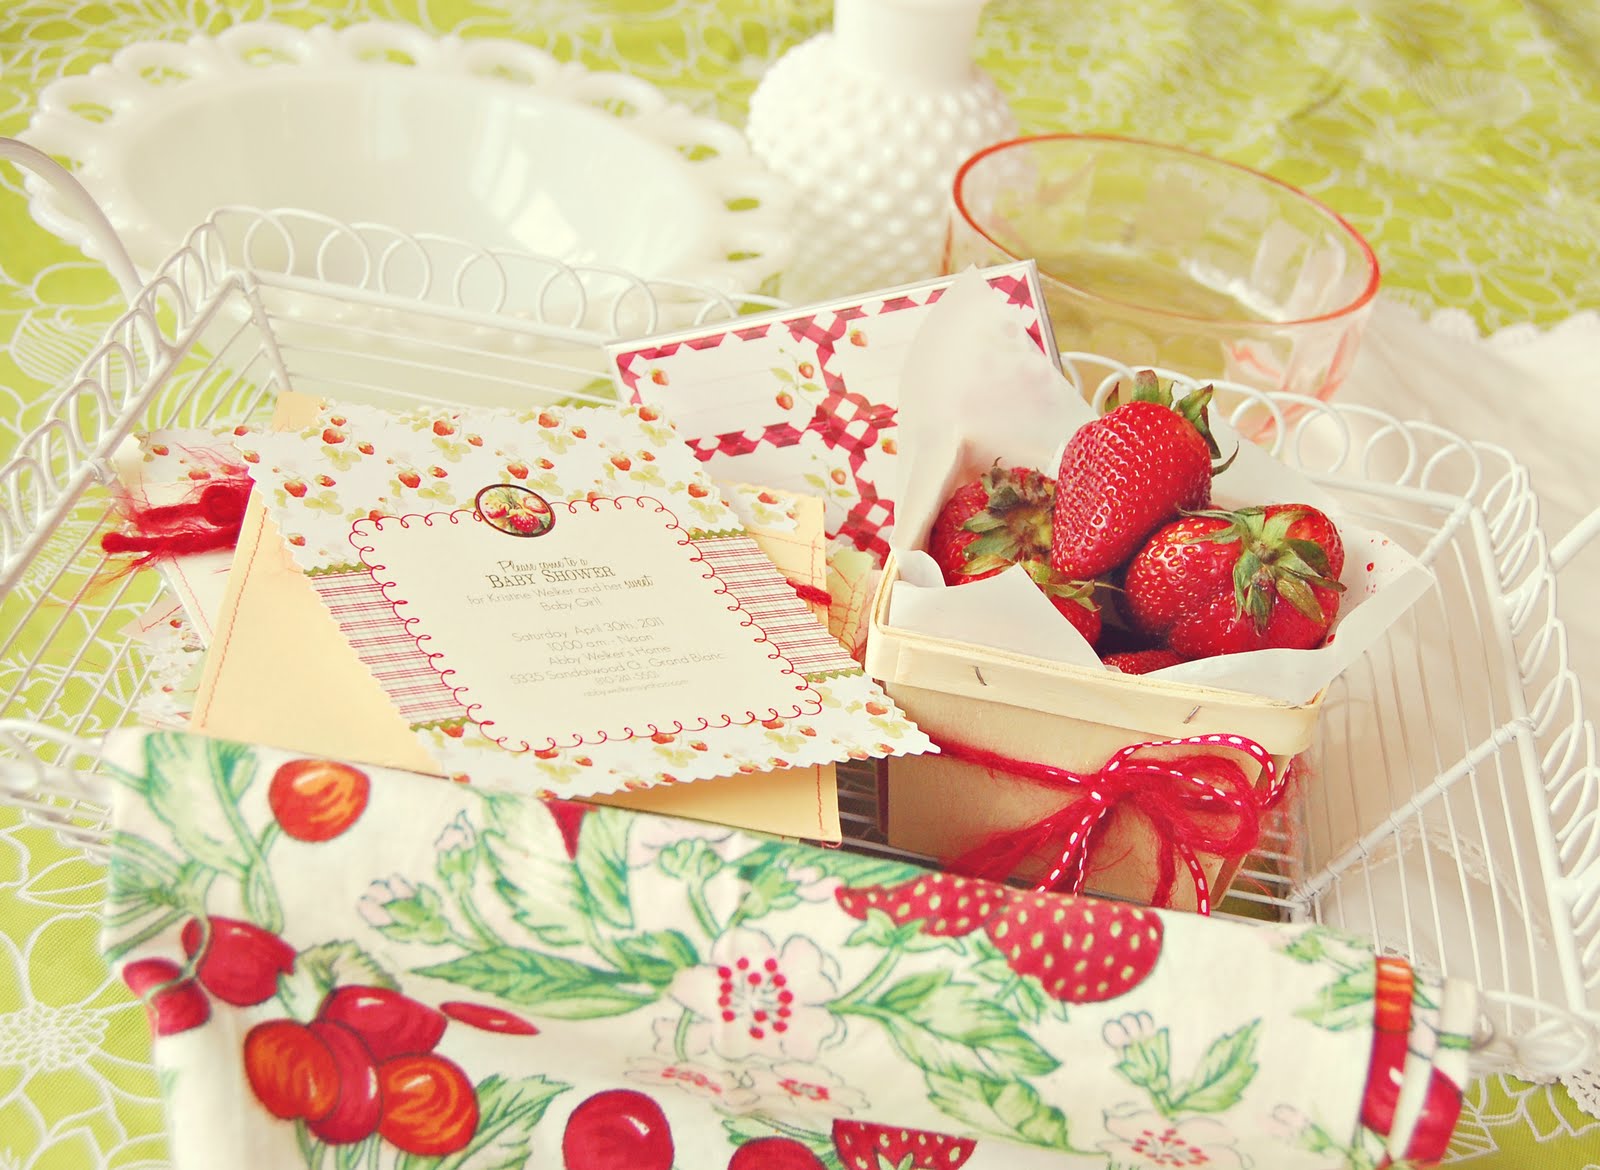 Strawberry Diaper Cake, Berry Cute Baby Shower, Strawberries Baby